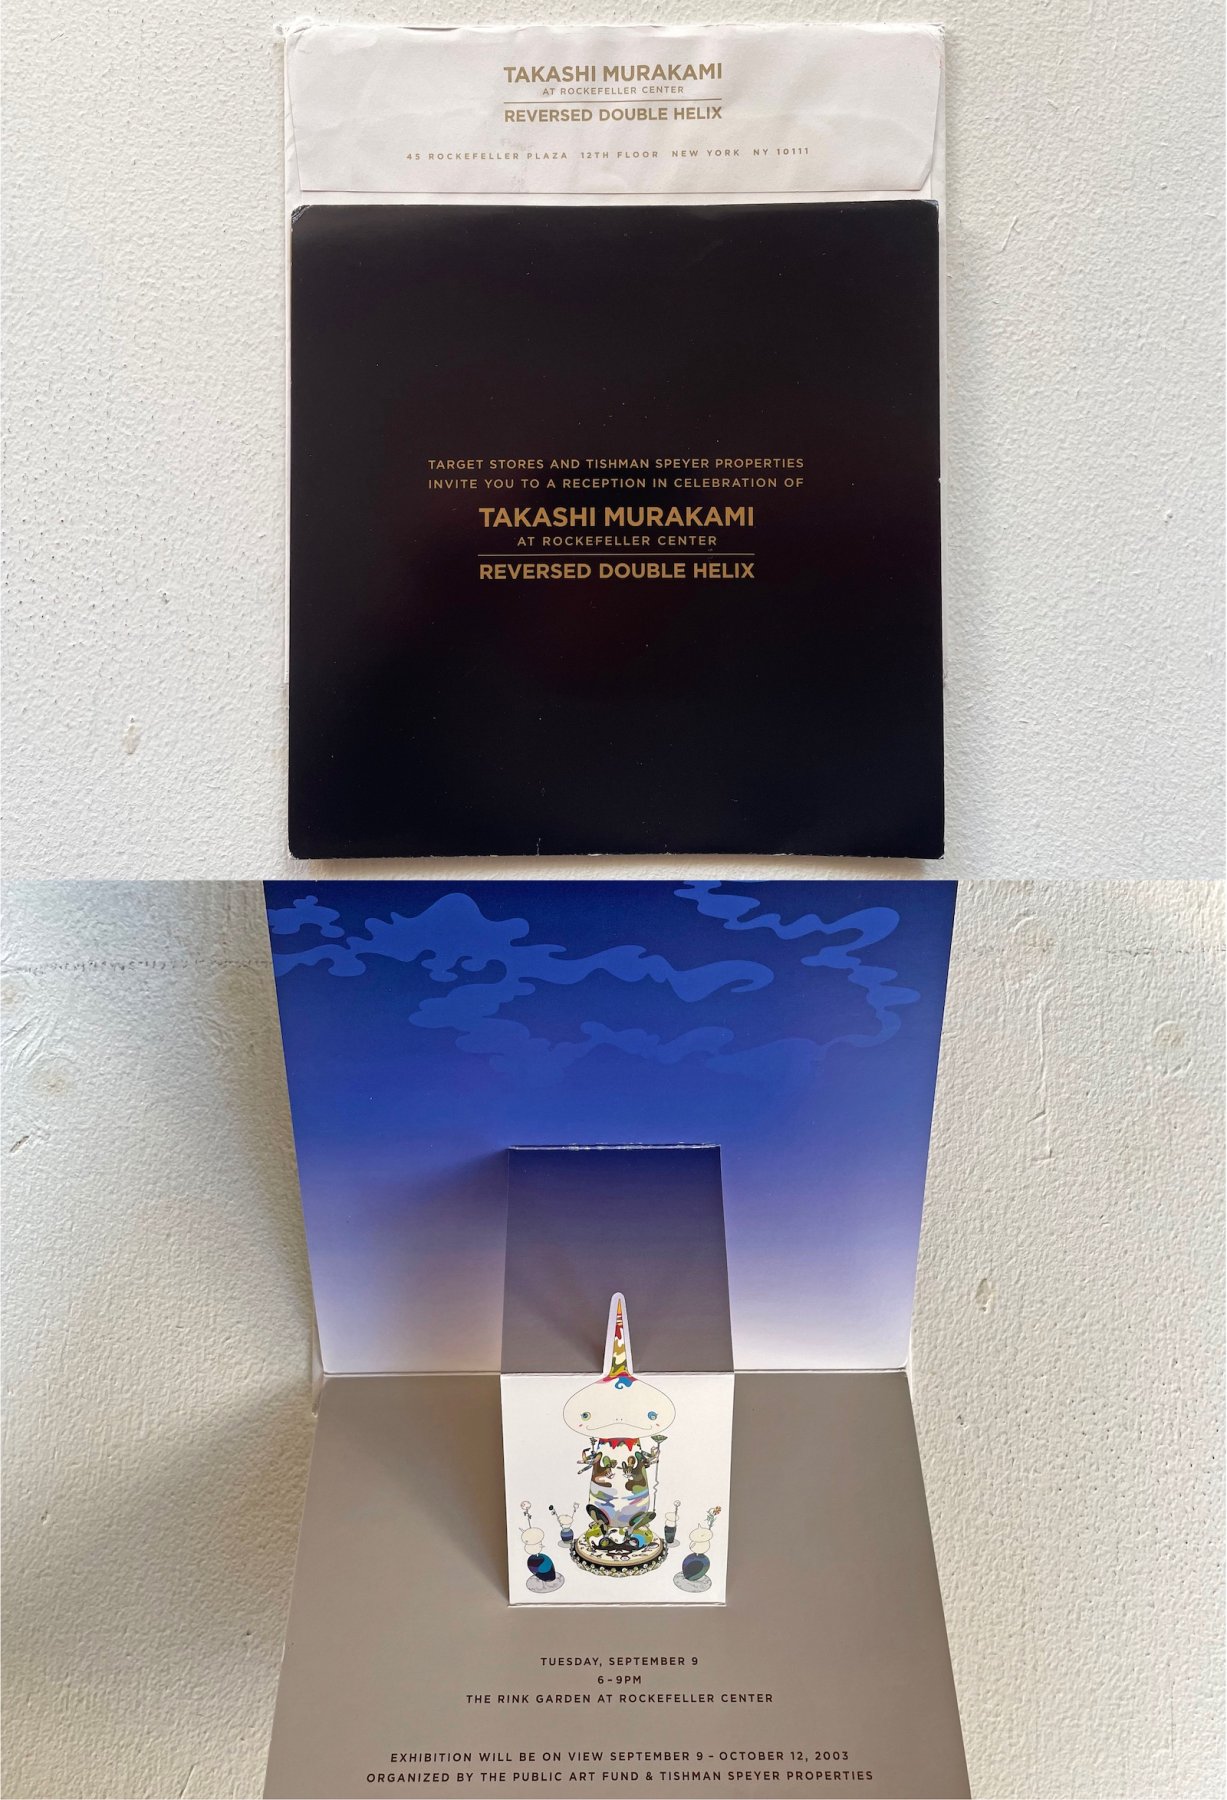 2003年、ニューヨーク、ロックフェラーセンターでの村上隆「RESERVED DOUBLE HELIX」の招待状。日本語では「二重螺旋回転」。展示は仏像オマージュのいわゆる“とんがりくん”。２つ折りになっている招待状を開けるとこんな感じ。